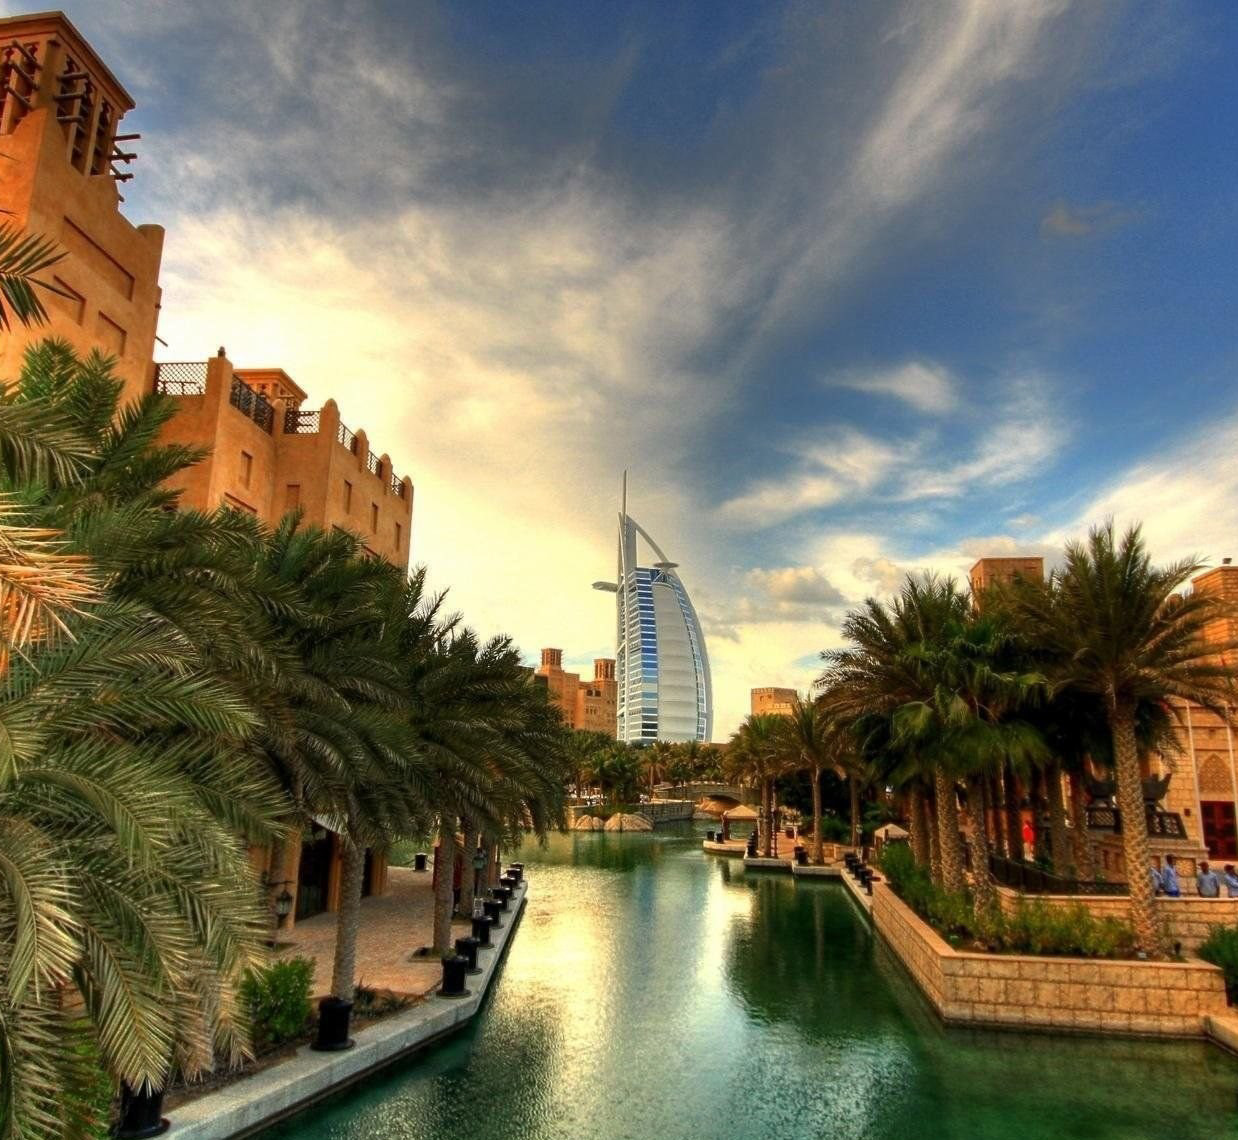 迪拜7大必游经典景点,到过这里才算玩过迪拜!